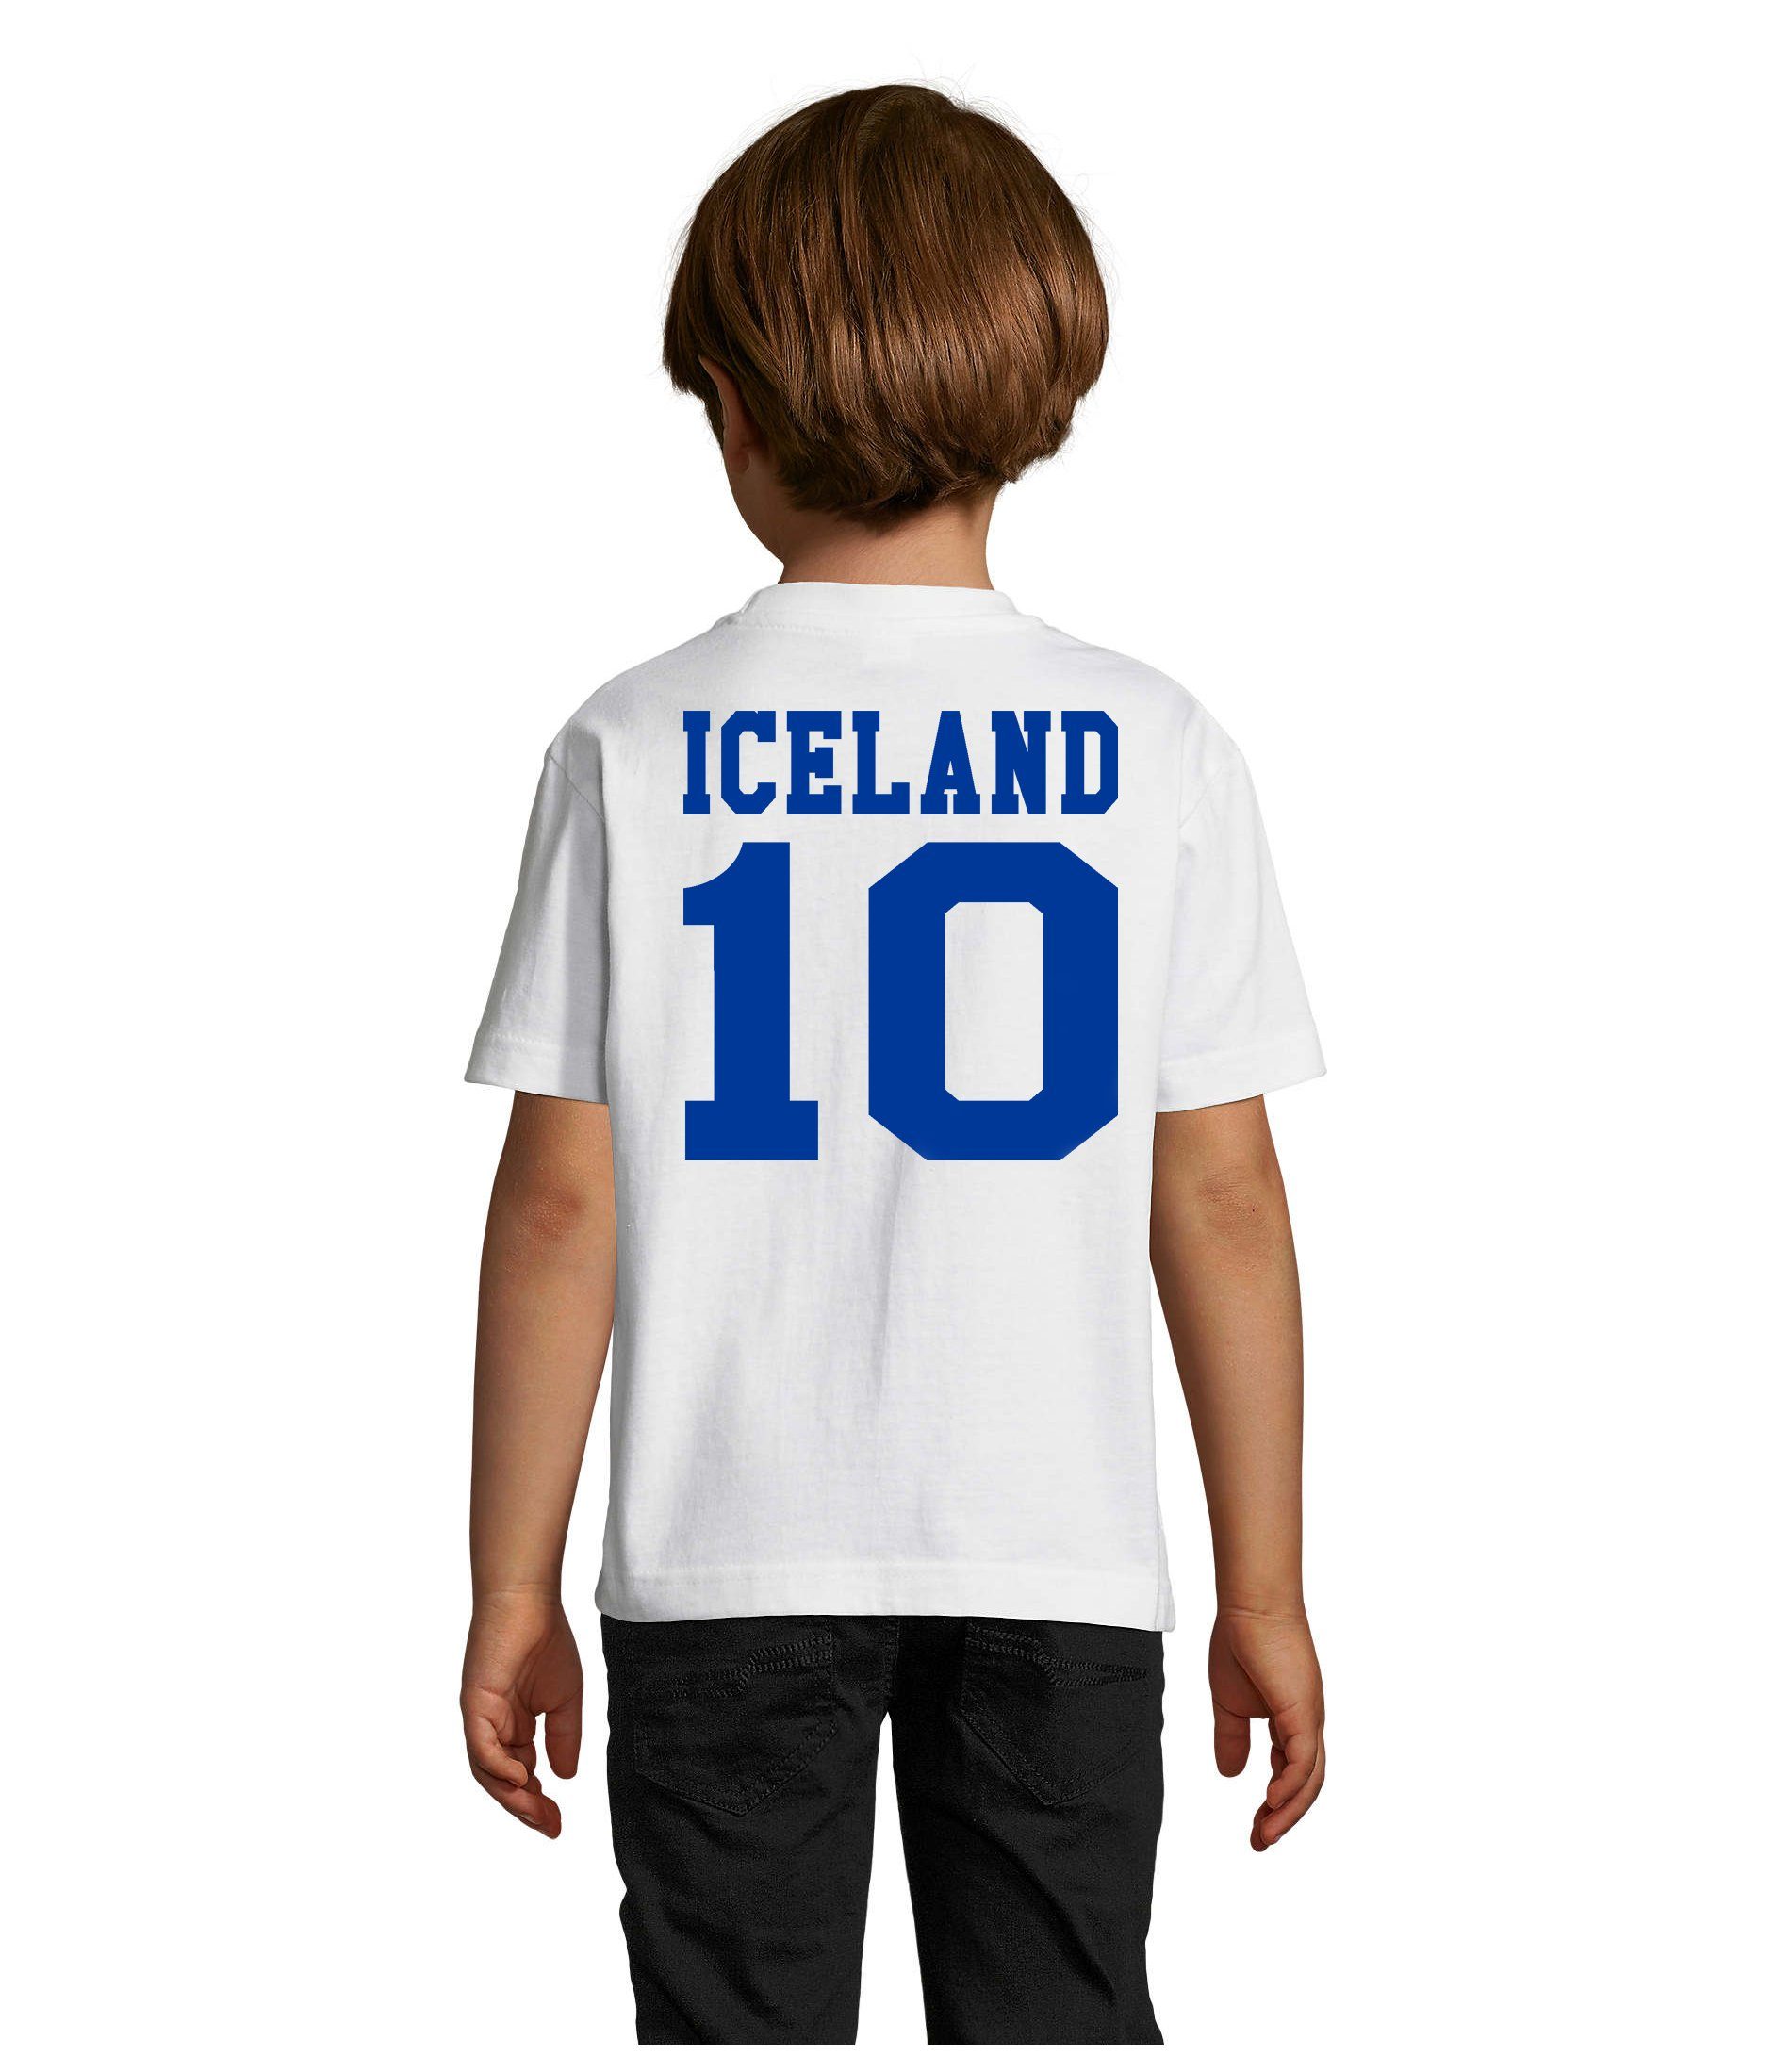 Blondie & T-Shirt Trikot Kinder Blau/Weiss Iceland Brownie WM Meister Sport Island Handball Fußball EM